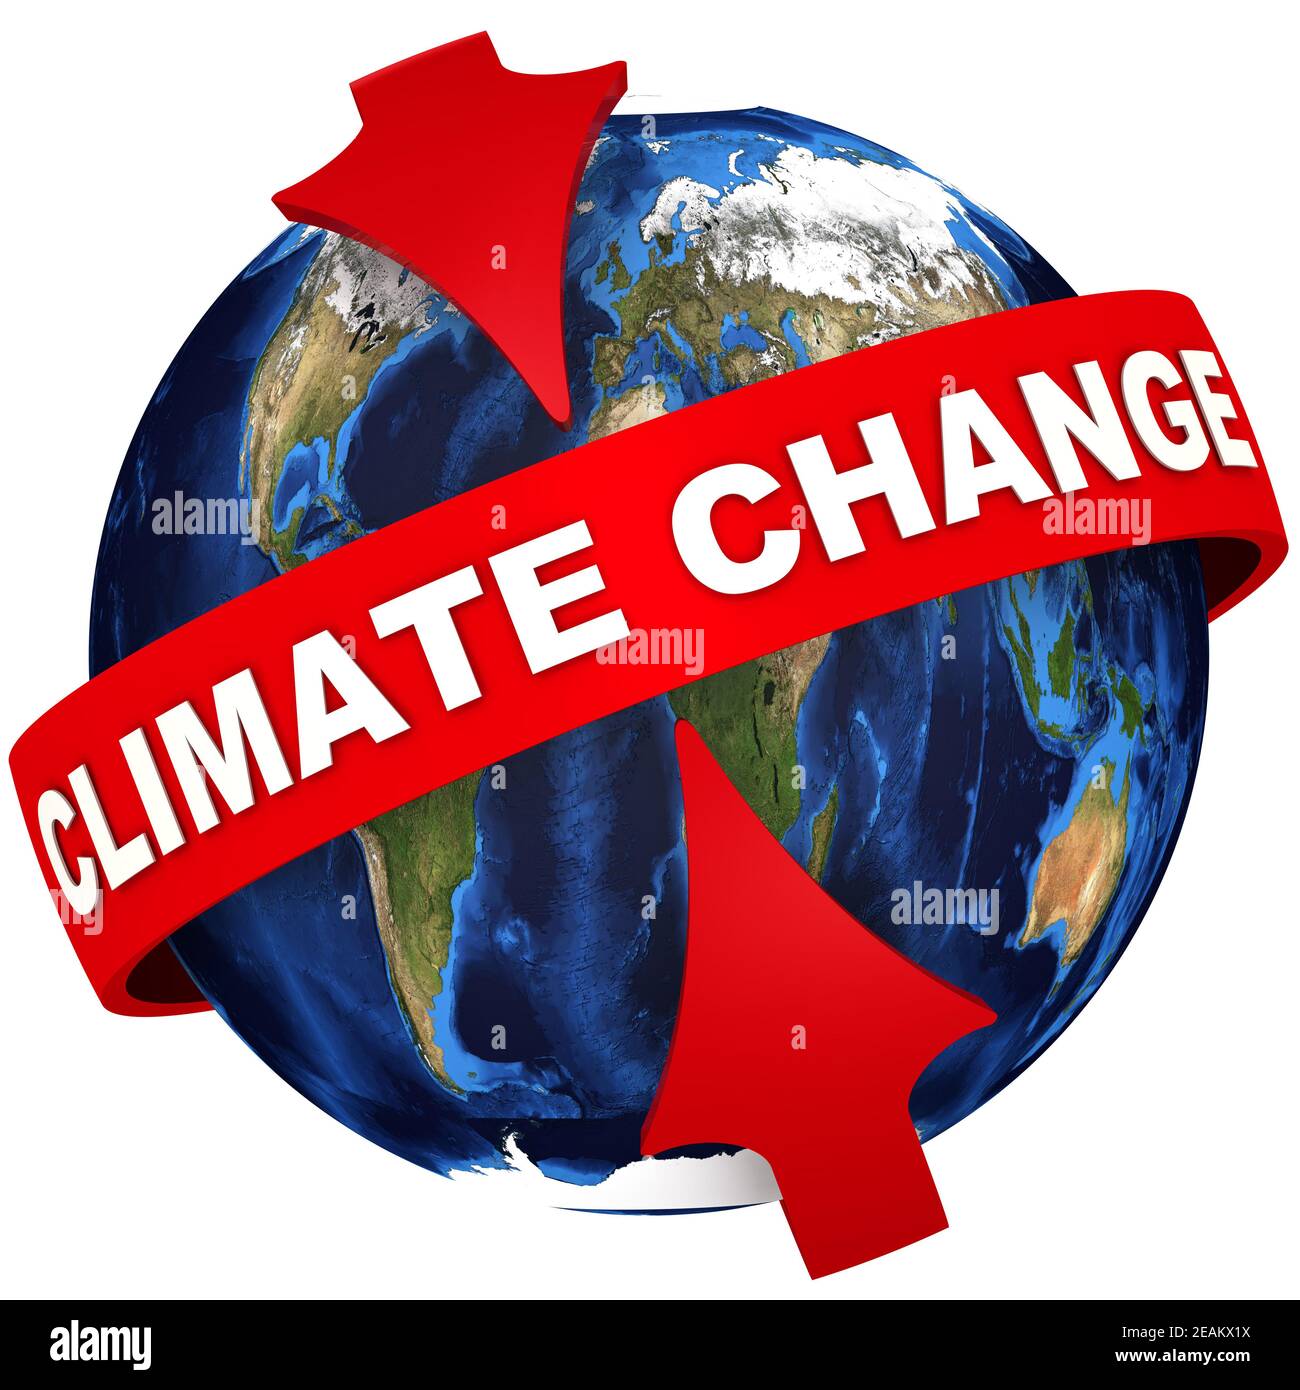 Globaler Klimawandel. Rote Pfeile zeigen auf den weißen Text GLOBALER KLIMAWANDEL auf dem roten Band auf dem Hintergrund des Globus. Isoliert Stockfoto